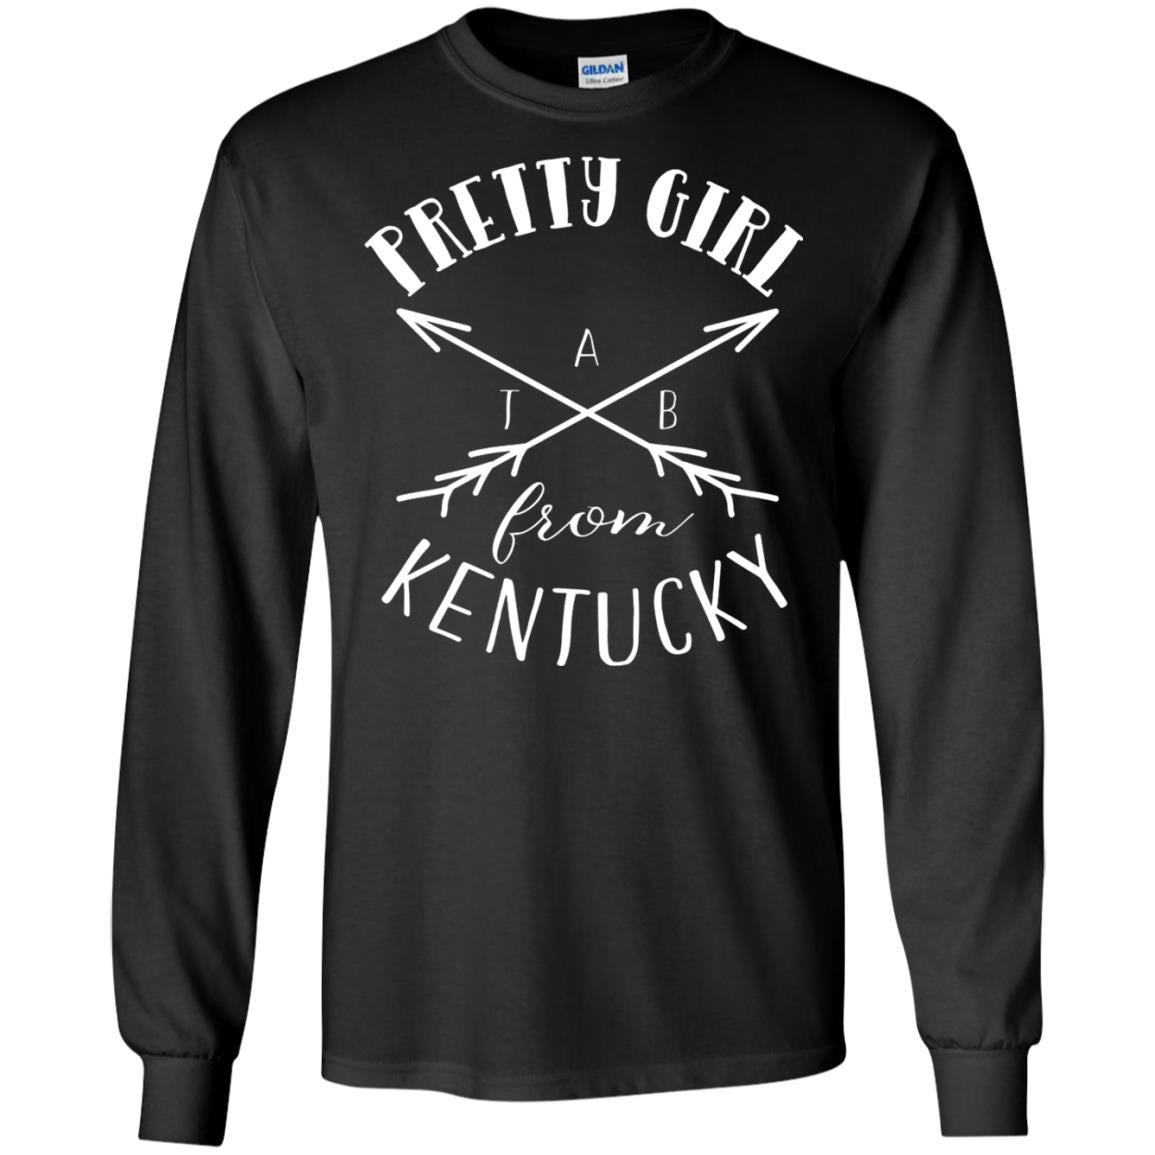 Pretty Girl From Kentucky T-shirt